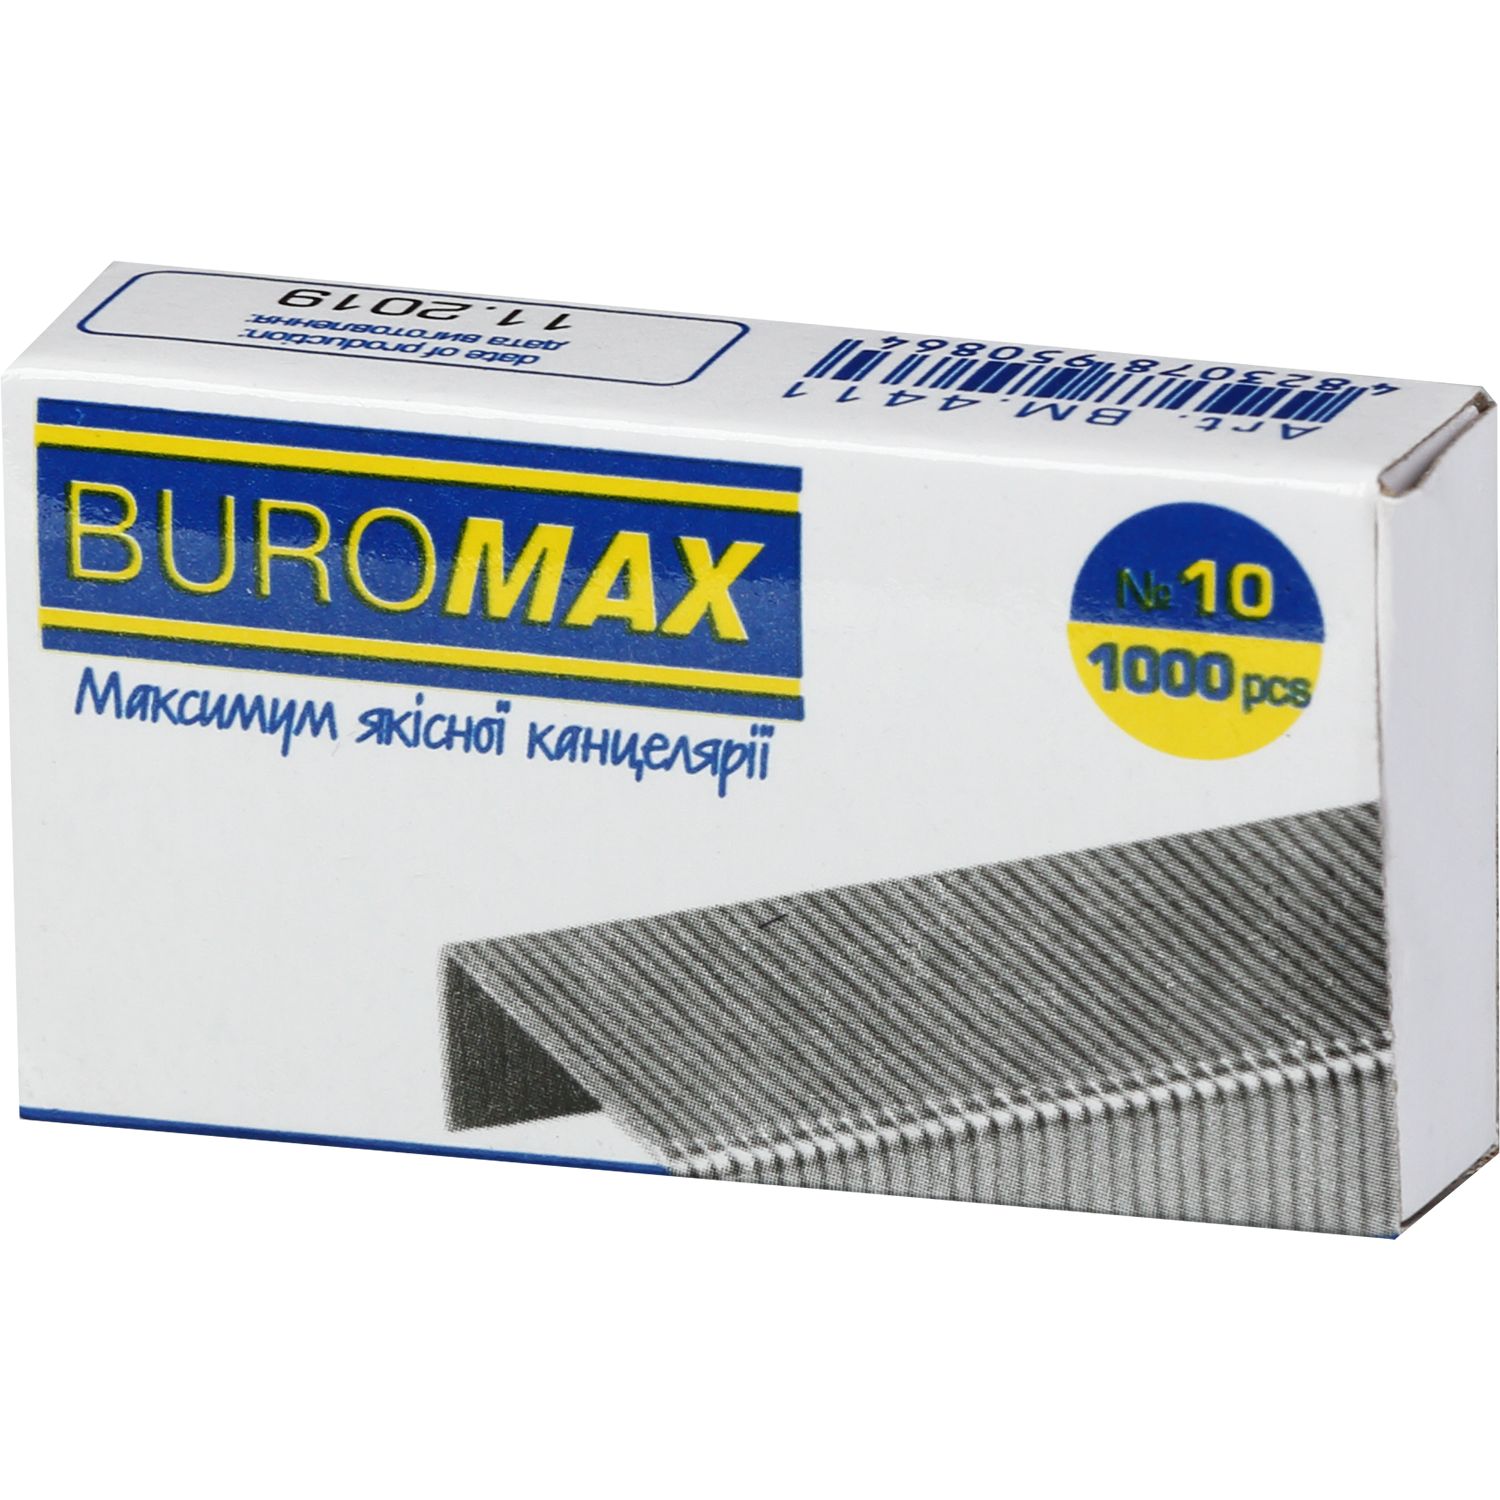 Скоби для степлерів Buromax Люкс №10 1000 шт. (BM.4411) - фото 1